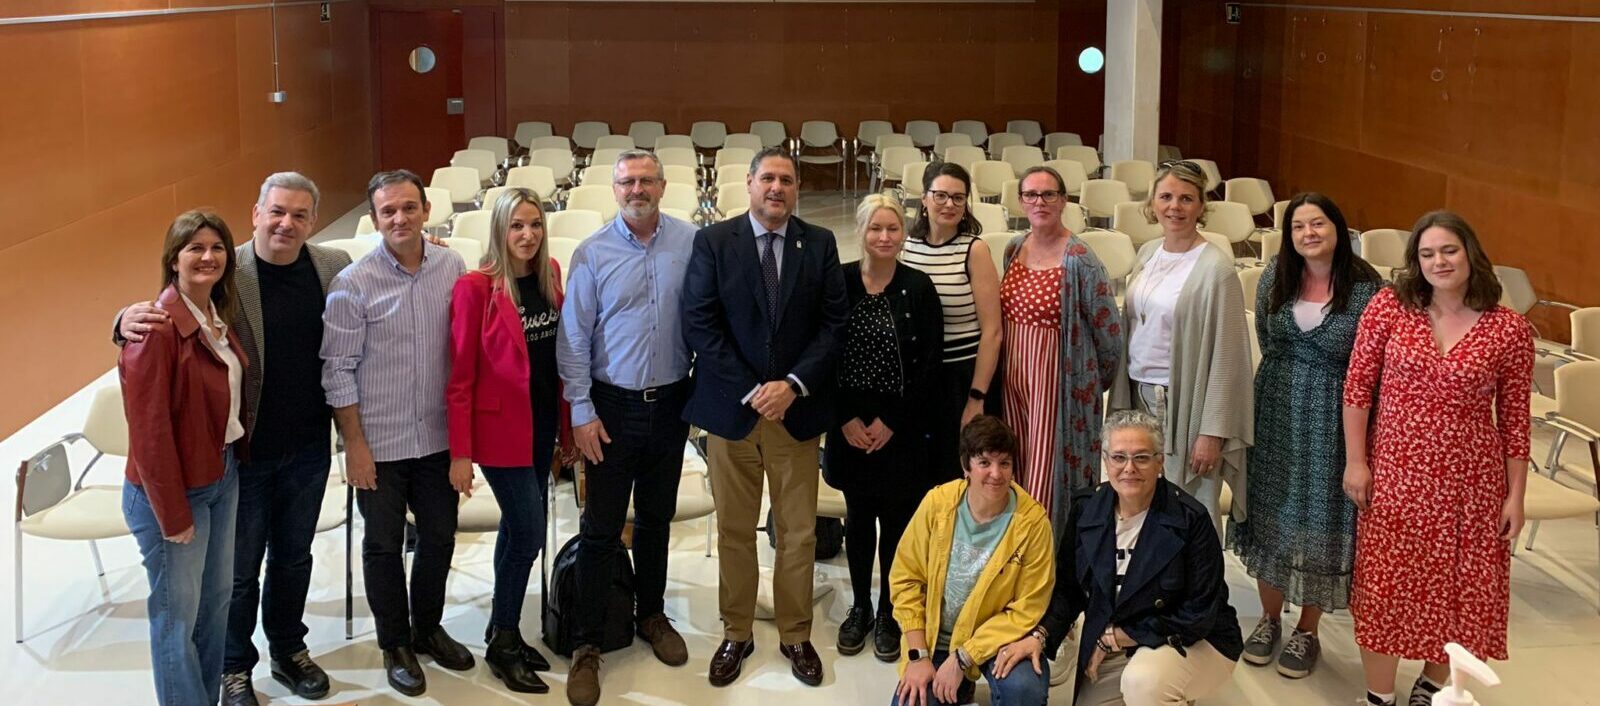 Tres colegios de Roquetas de Mar visitan la Delegación con sus socios europeos